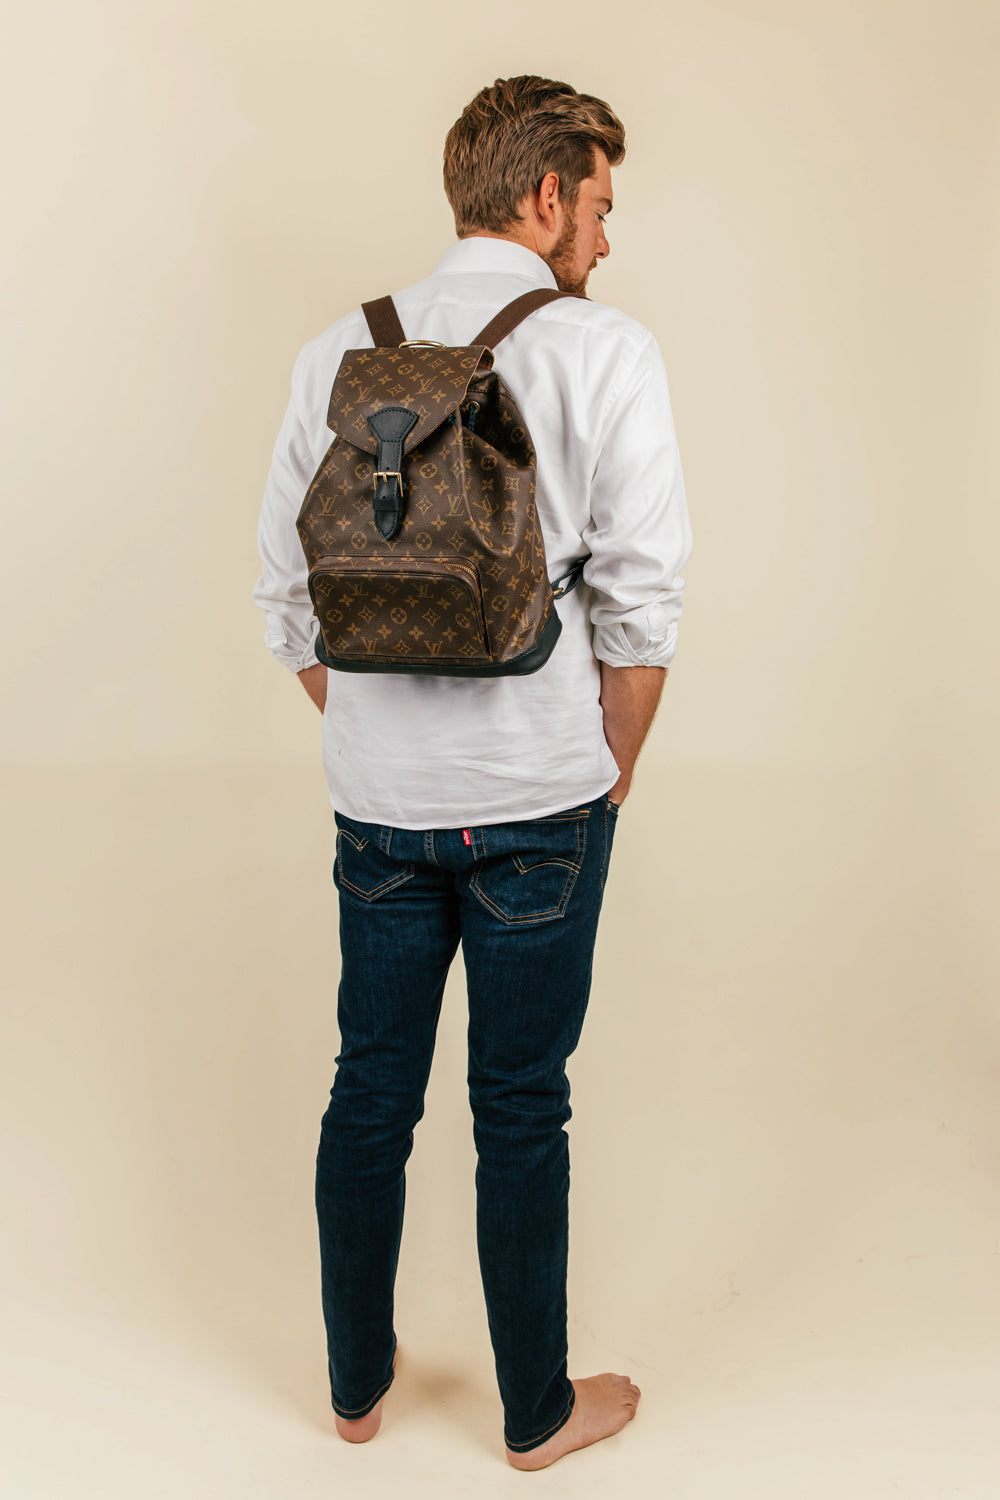 Louis Vuitton Montsouris GM Backpack Rucksack Bag Monogram Brown Vintage